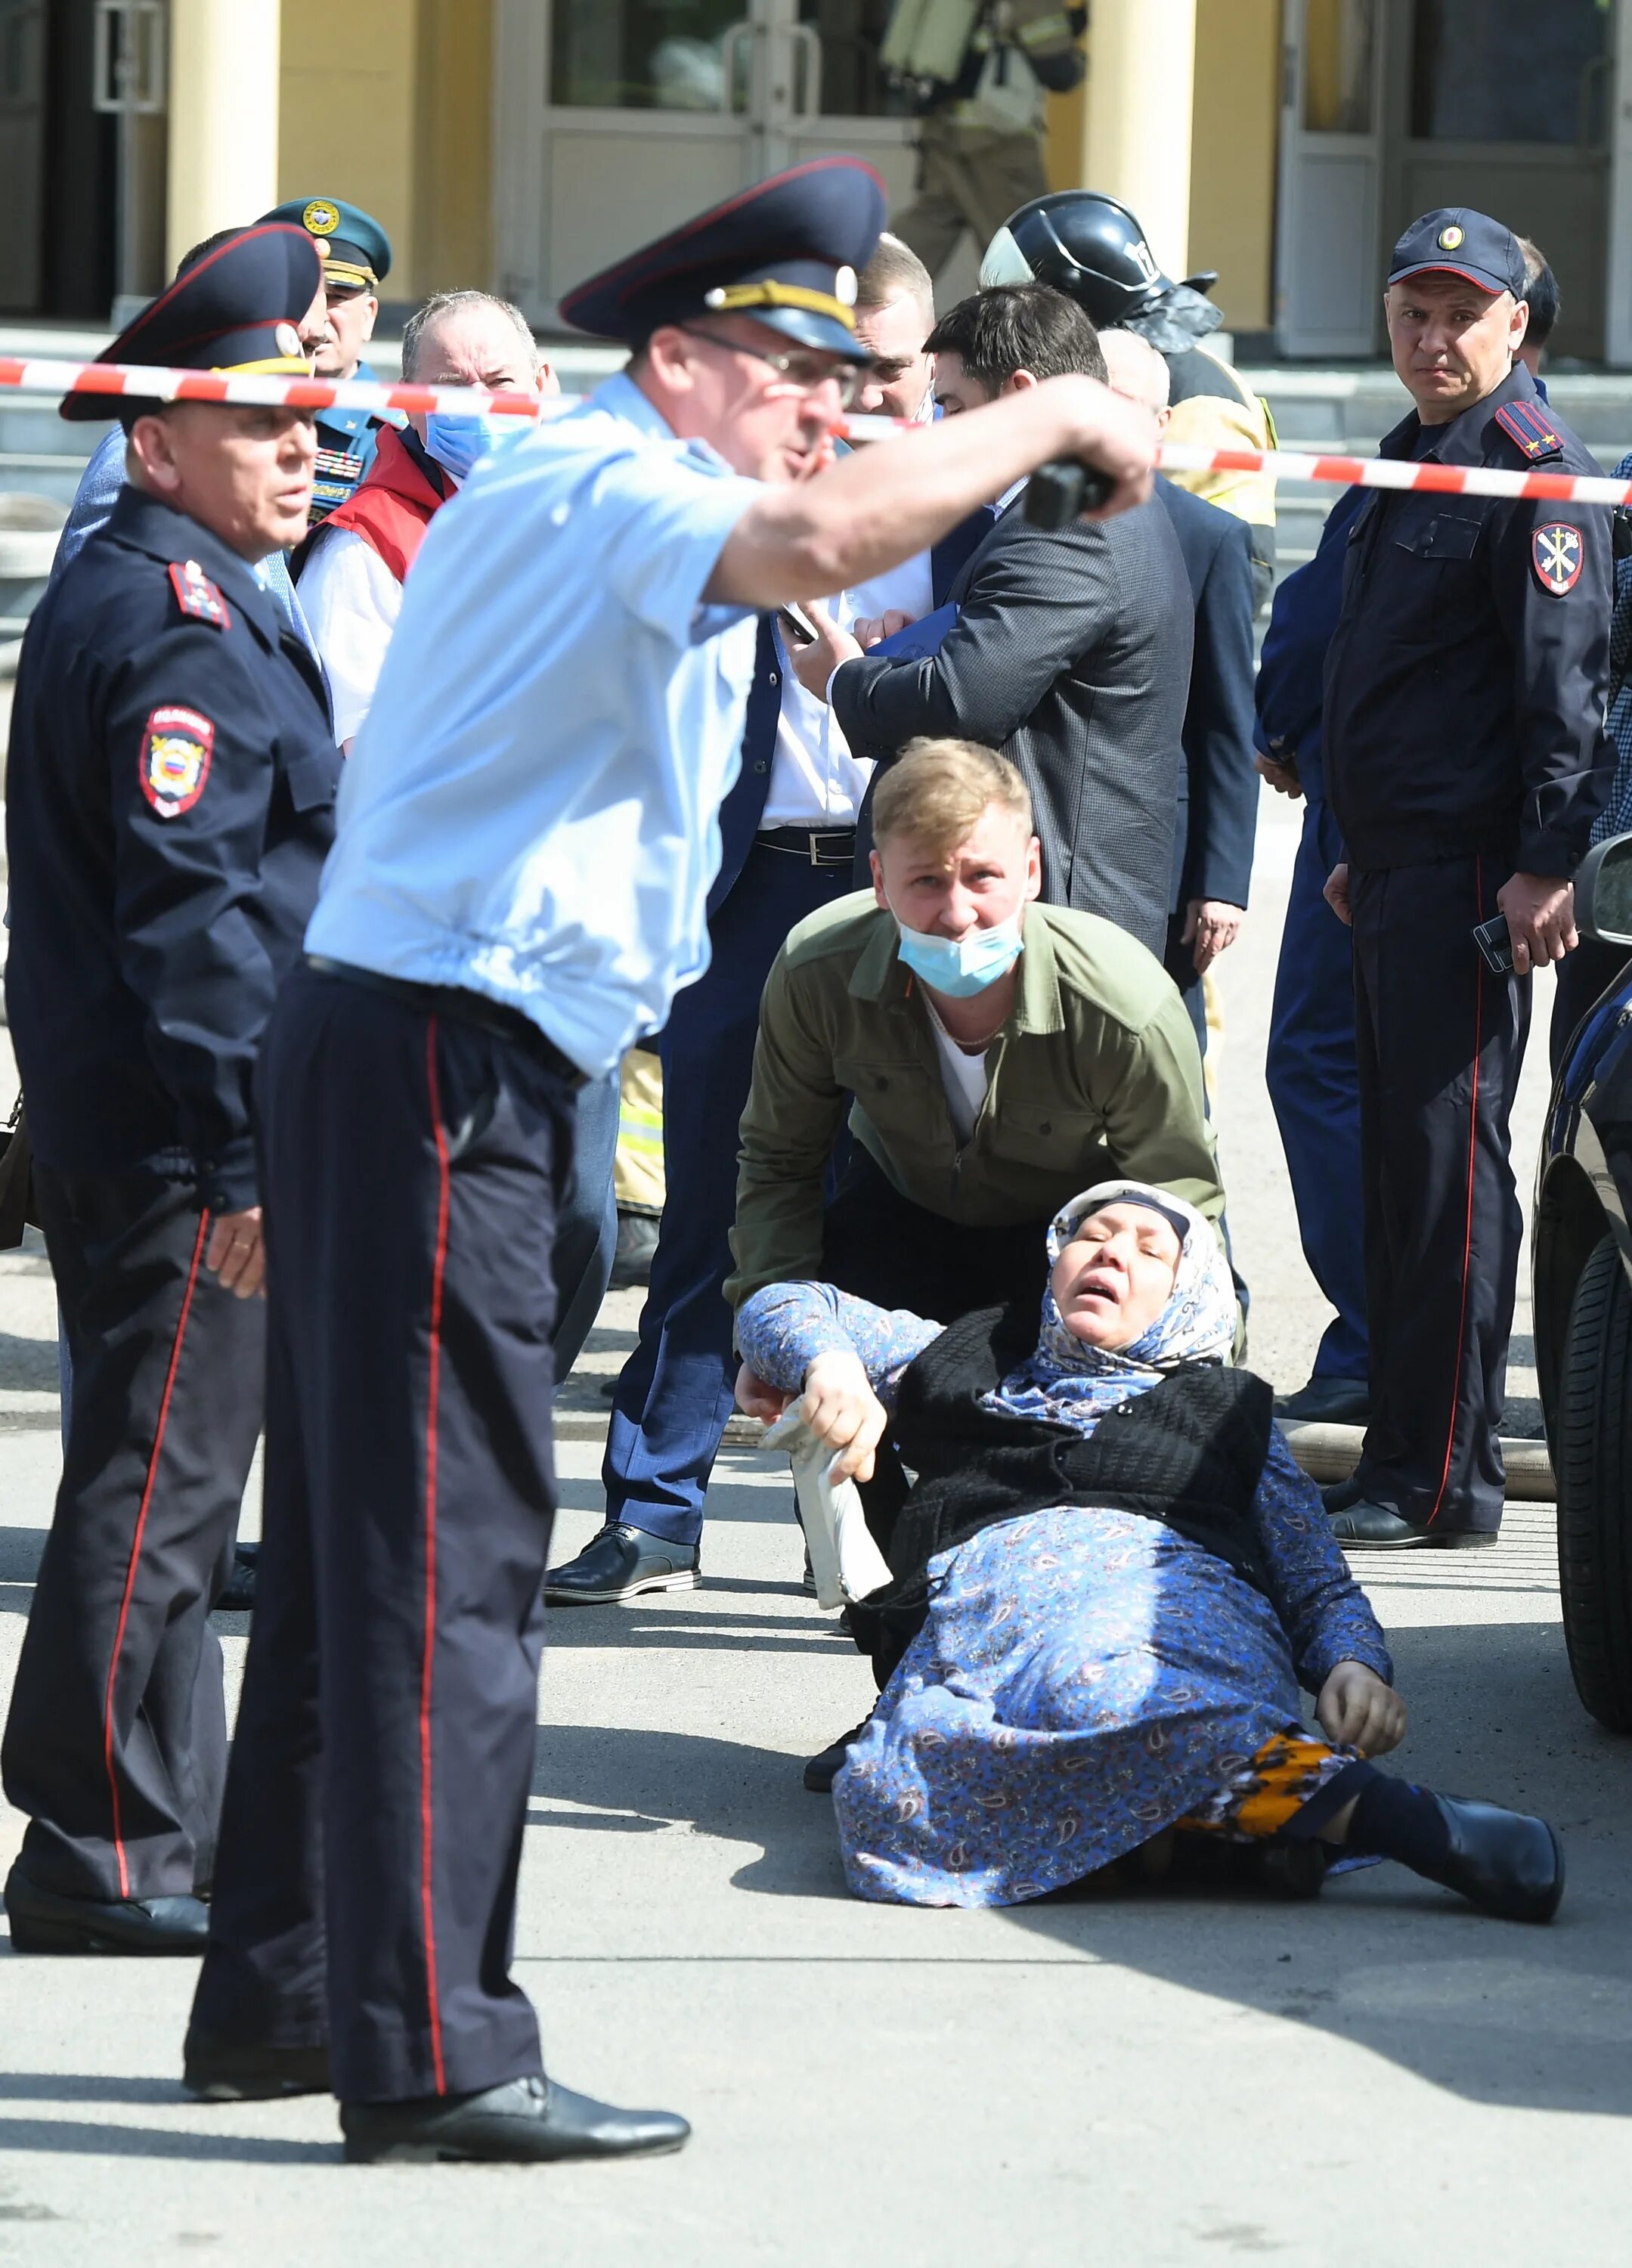 8 9 10 11 мая. Страшные кадры из Казанской школы. Полицейские бегут фото.